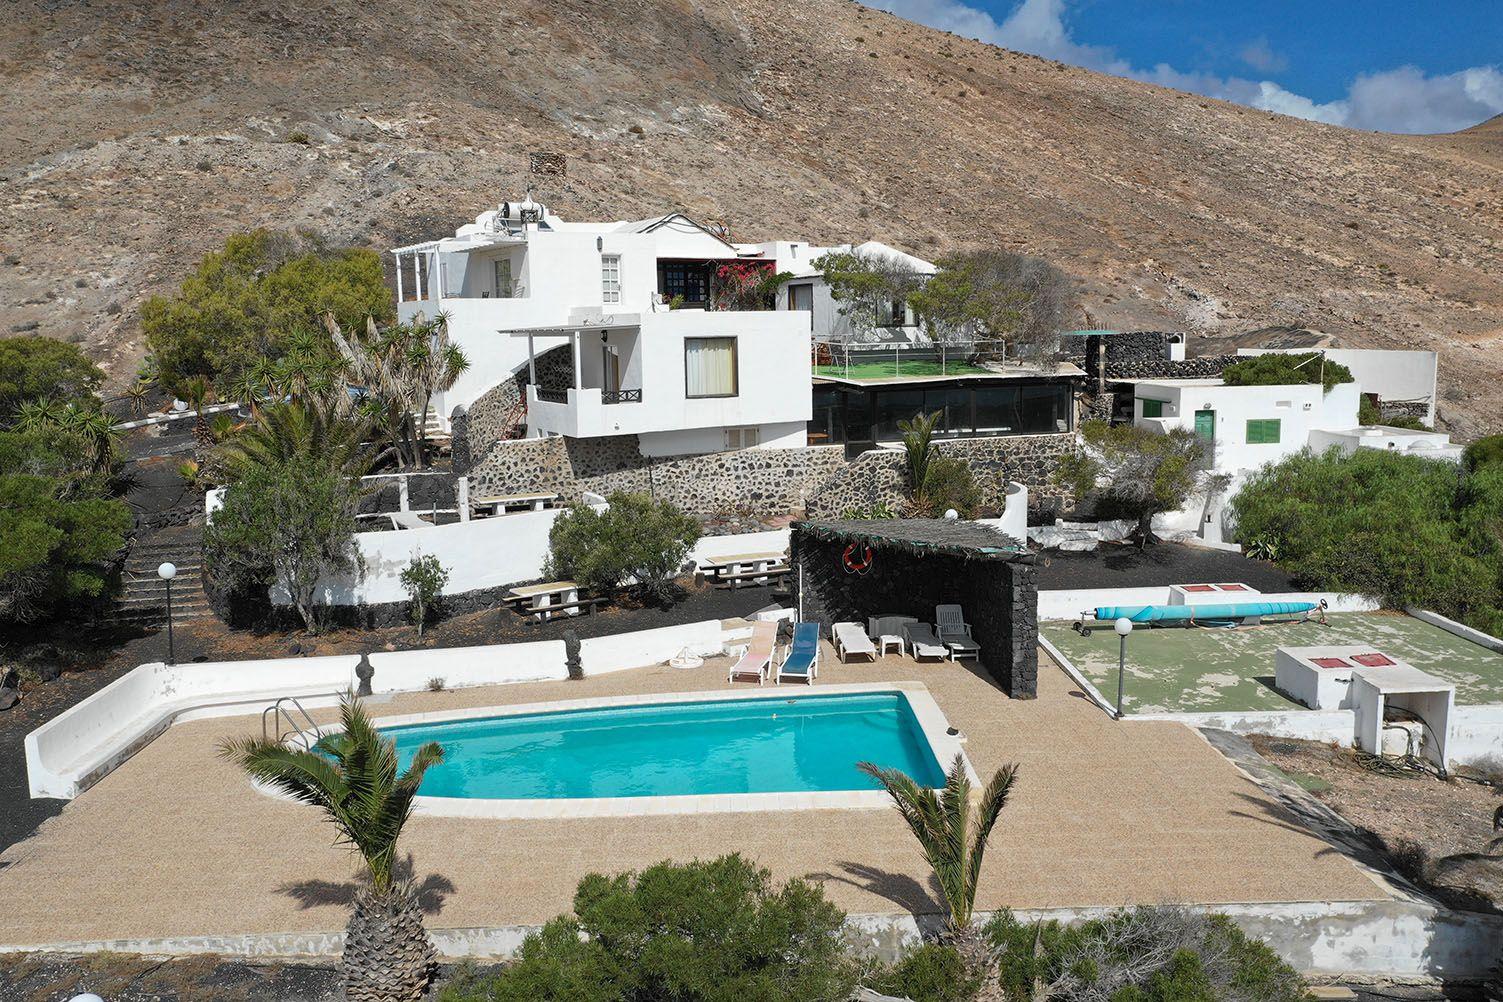 Ferienwohnung für 2 Personen in einer spanisc Ferienhaus  Lanzarote